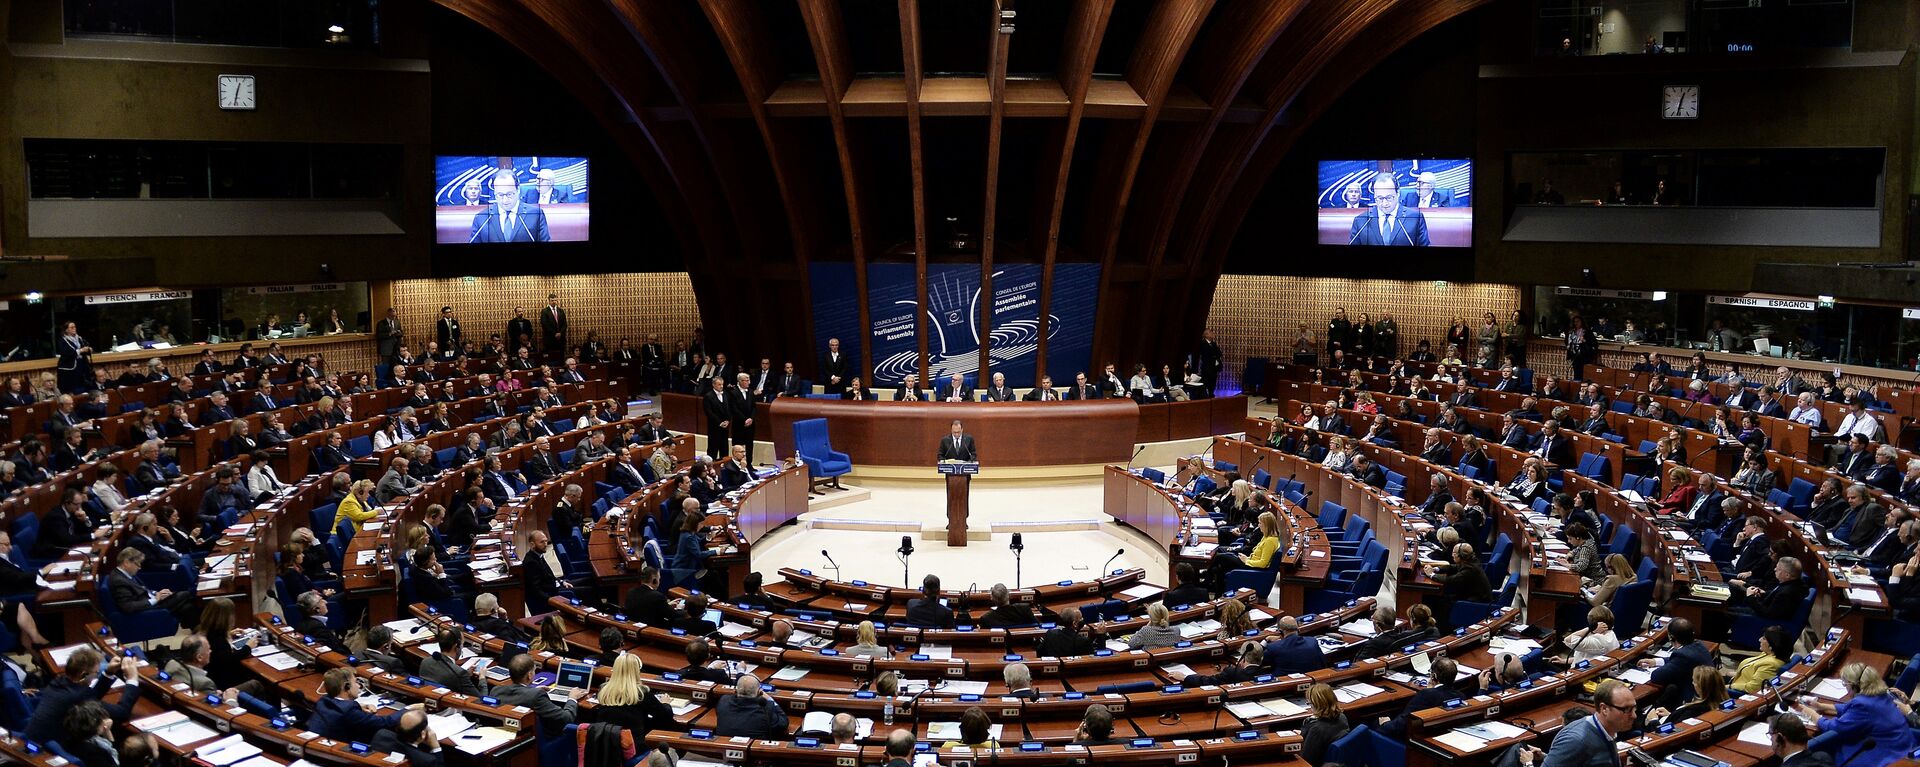 Заседание Парламентской ассамблеи Совета Европы, фото из архива - Sputnik Azərbaycan, 1920, 27.01.2021